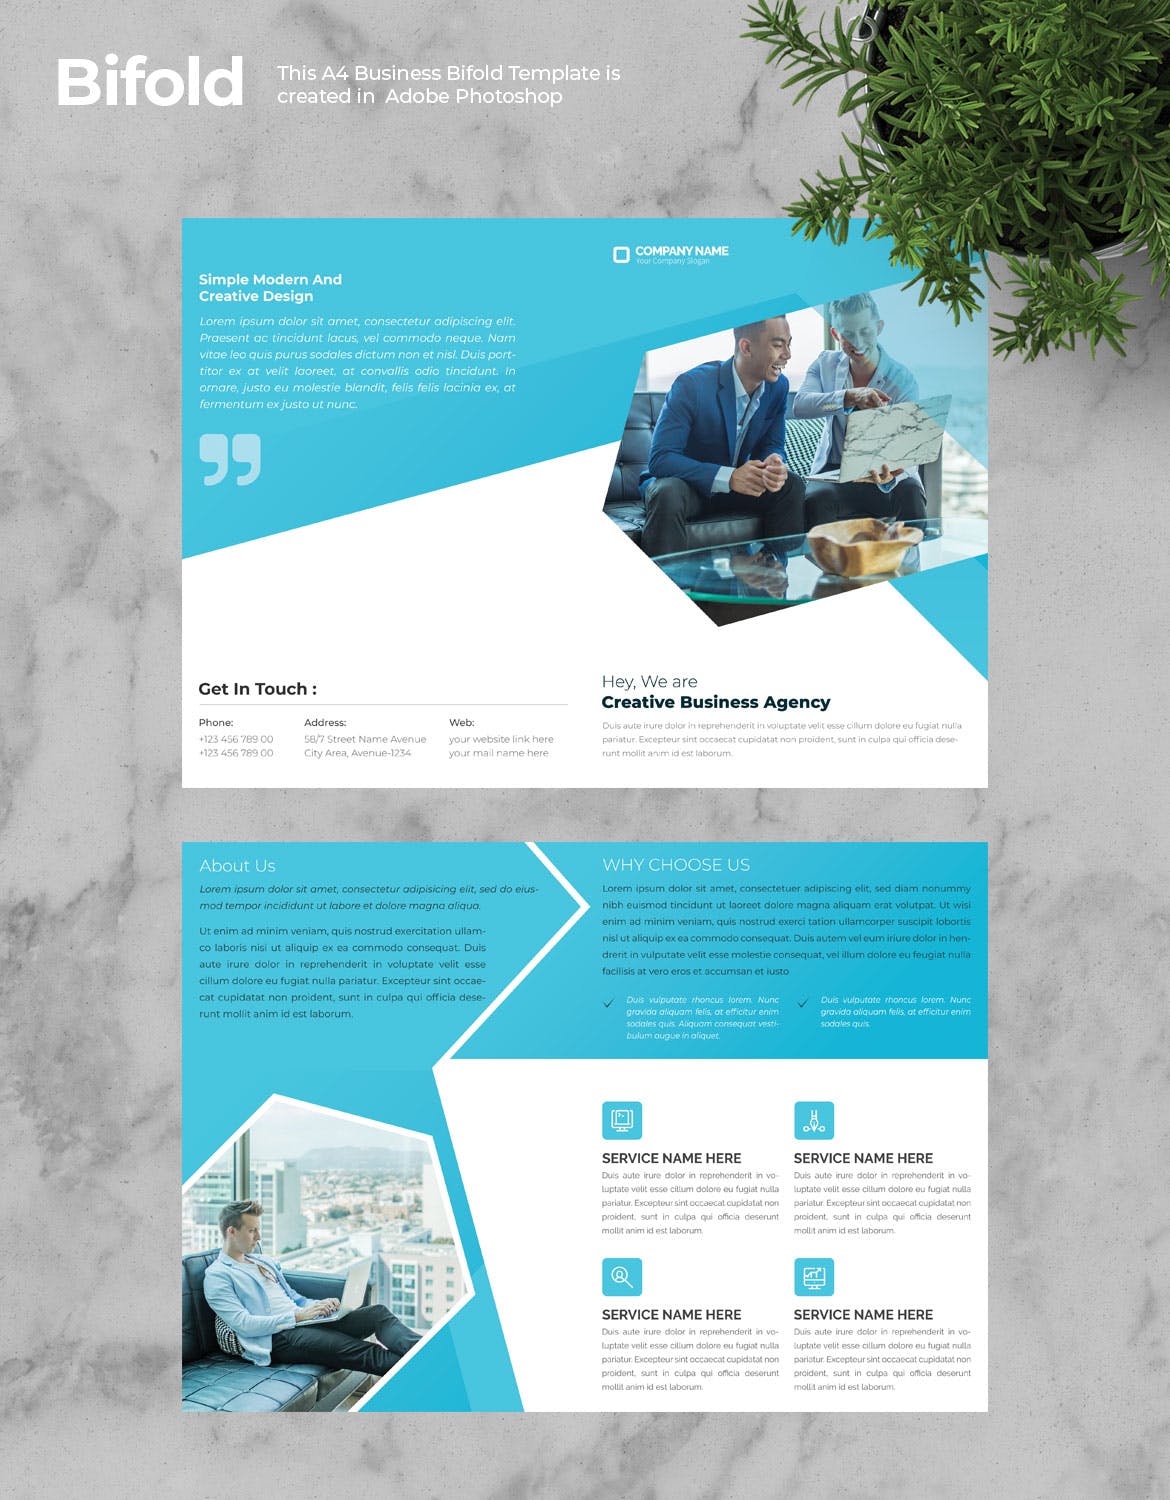 创意代理公司蓝色对折页企业宣传册设计模板v3 Business Bifold Brochure插图(1)